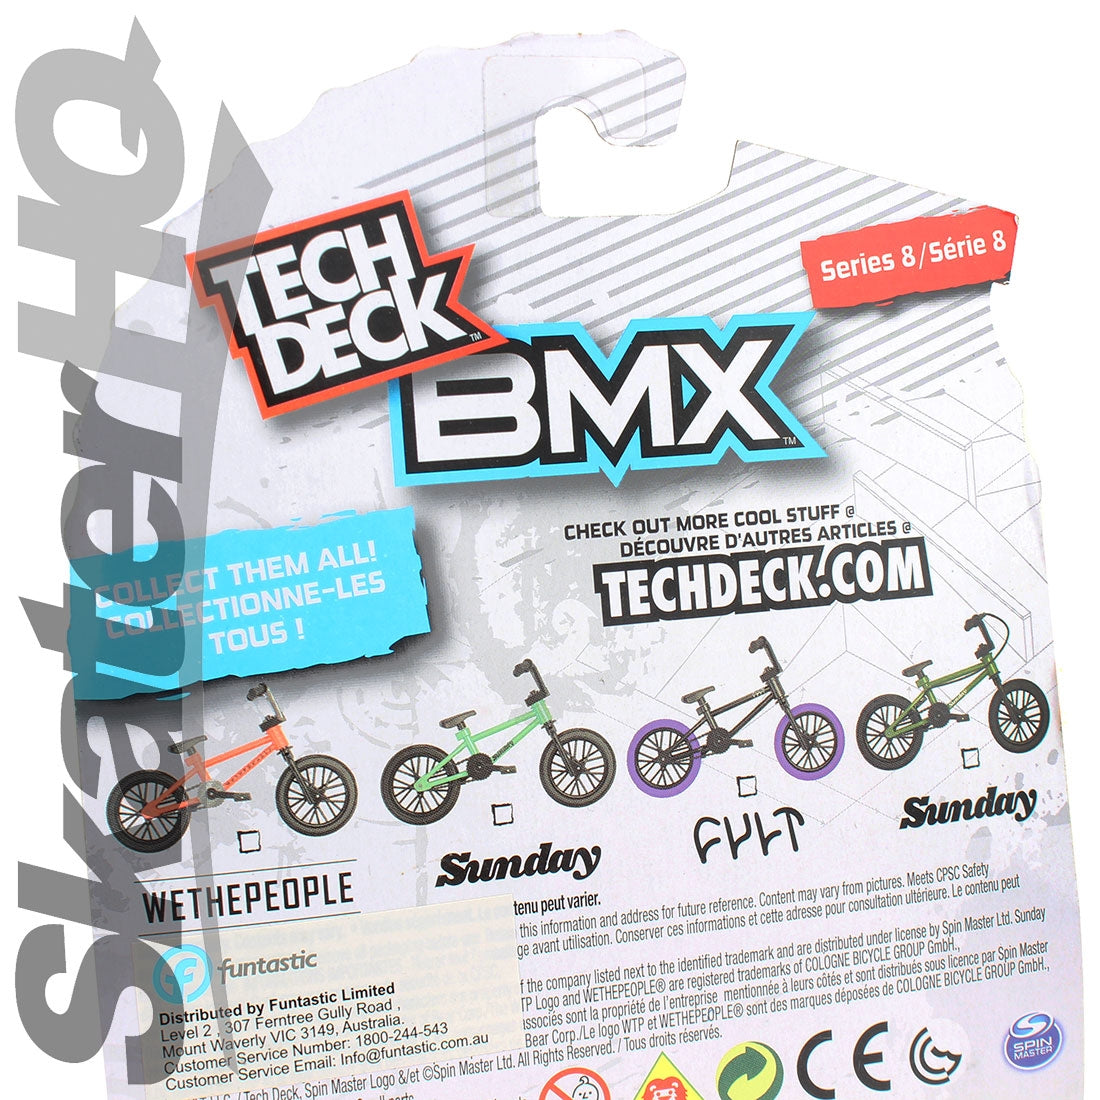 Tech Deck BMX S8 - Sunday Mint Skateboard Accessories